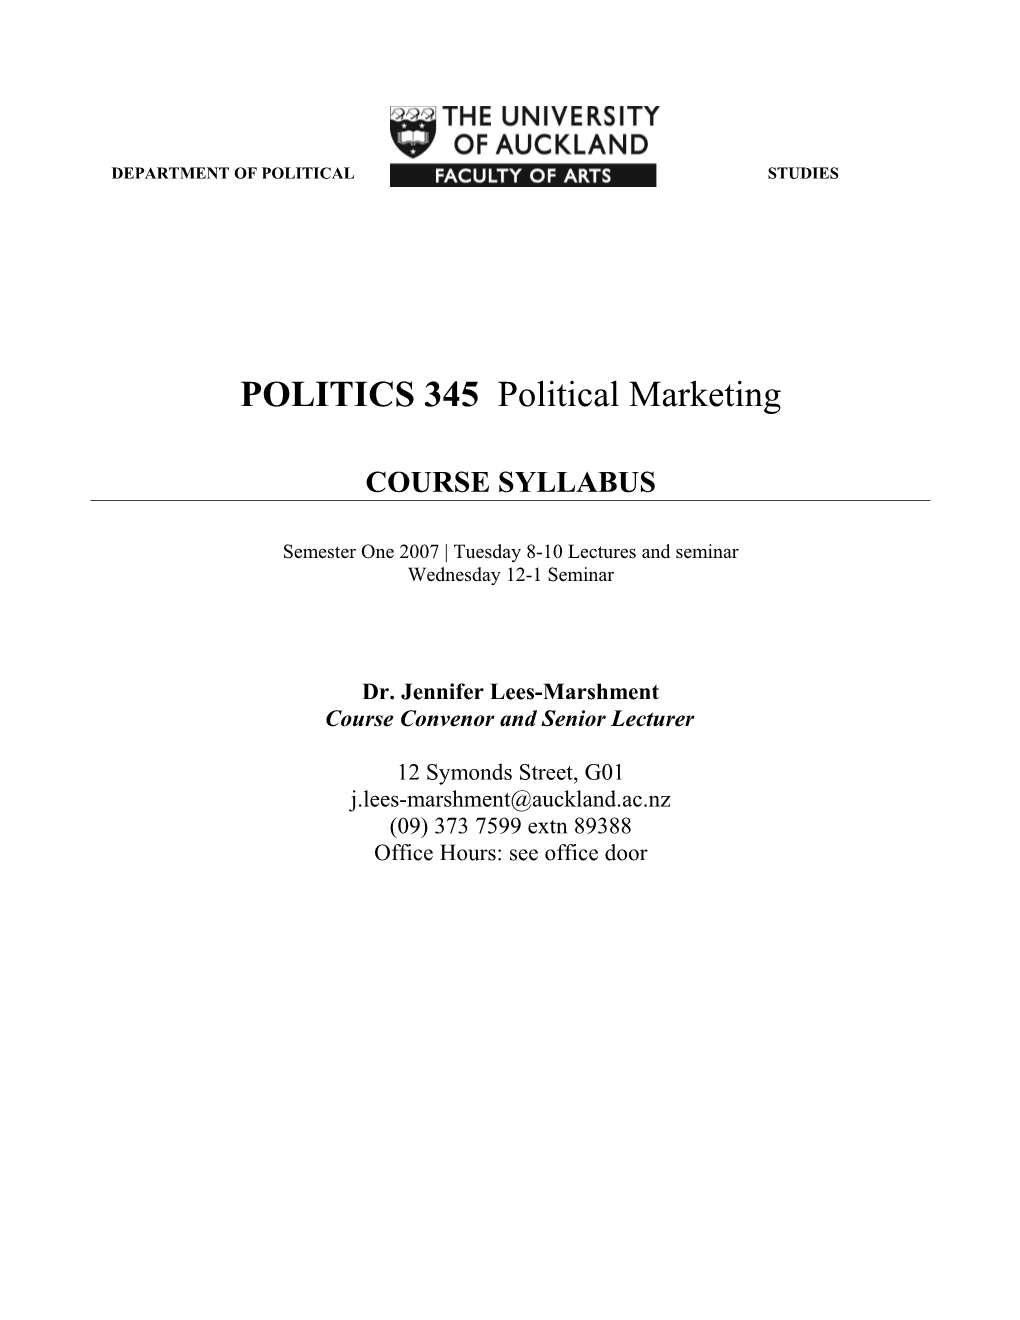 Syllabus, Regulations, EC 3508